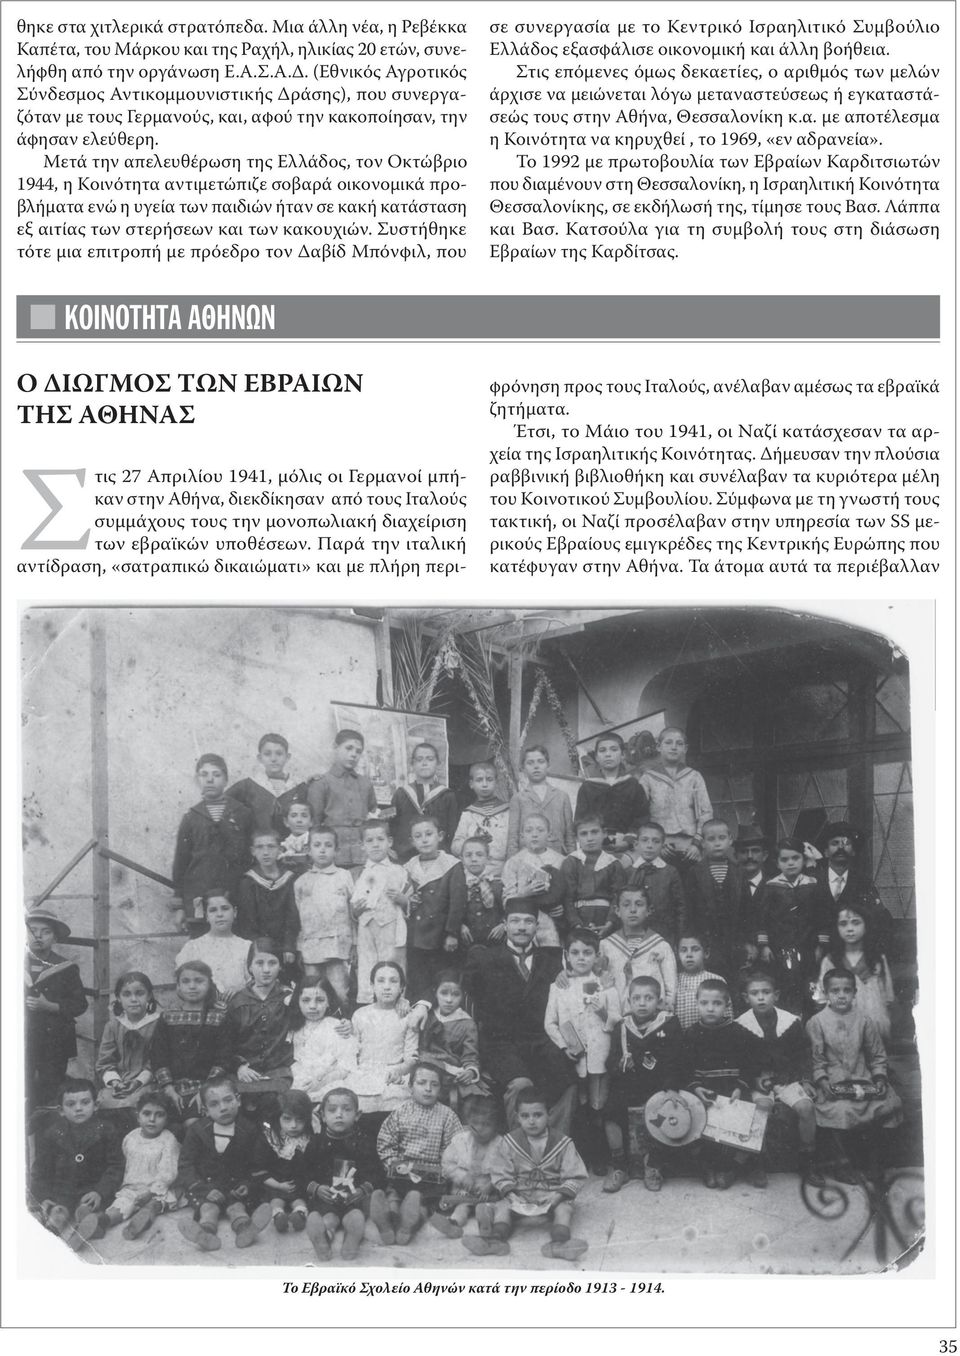 Μετά την απελευθέρωση της Ελλάδος, τον Οκτώβριο 1944, η Κοινότητα αντιμετώπιζε σοβαρά οικονομικά προβλήματα ενώ η υγεία των παιδιών ήταν σε κακή κατάσταση εξ αιτίας των στερήσεων και των κακουχιών.